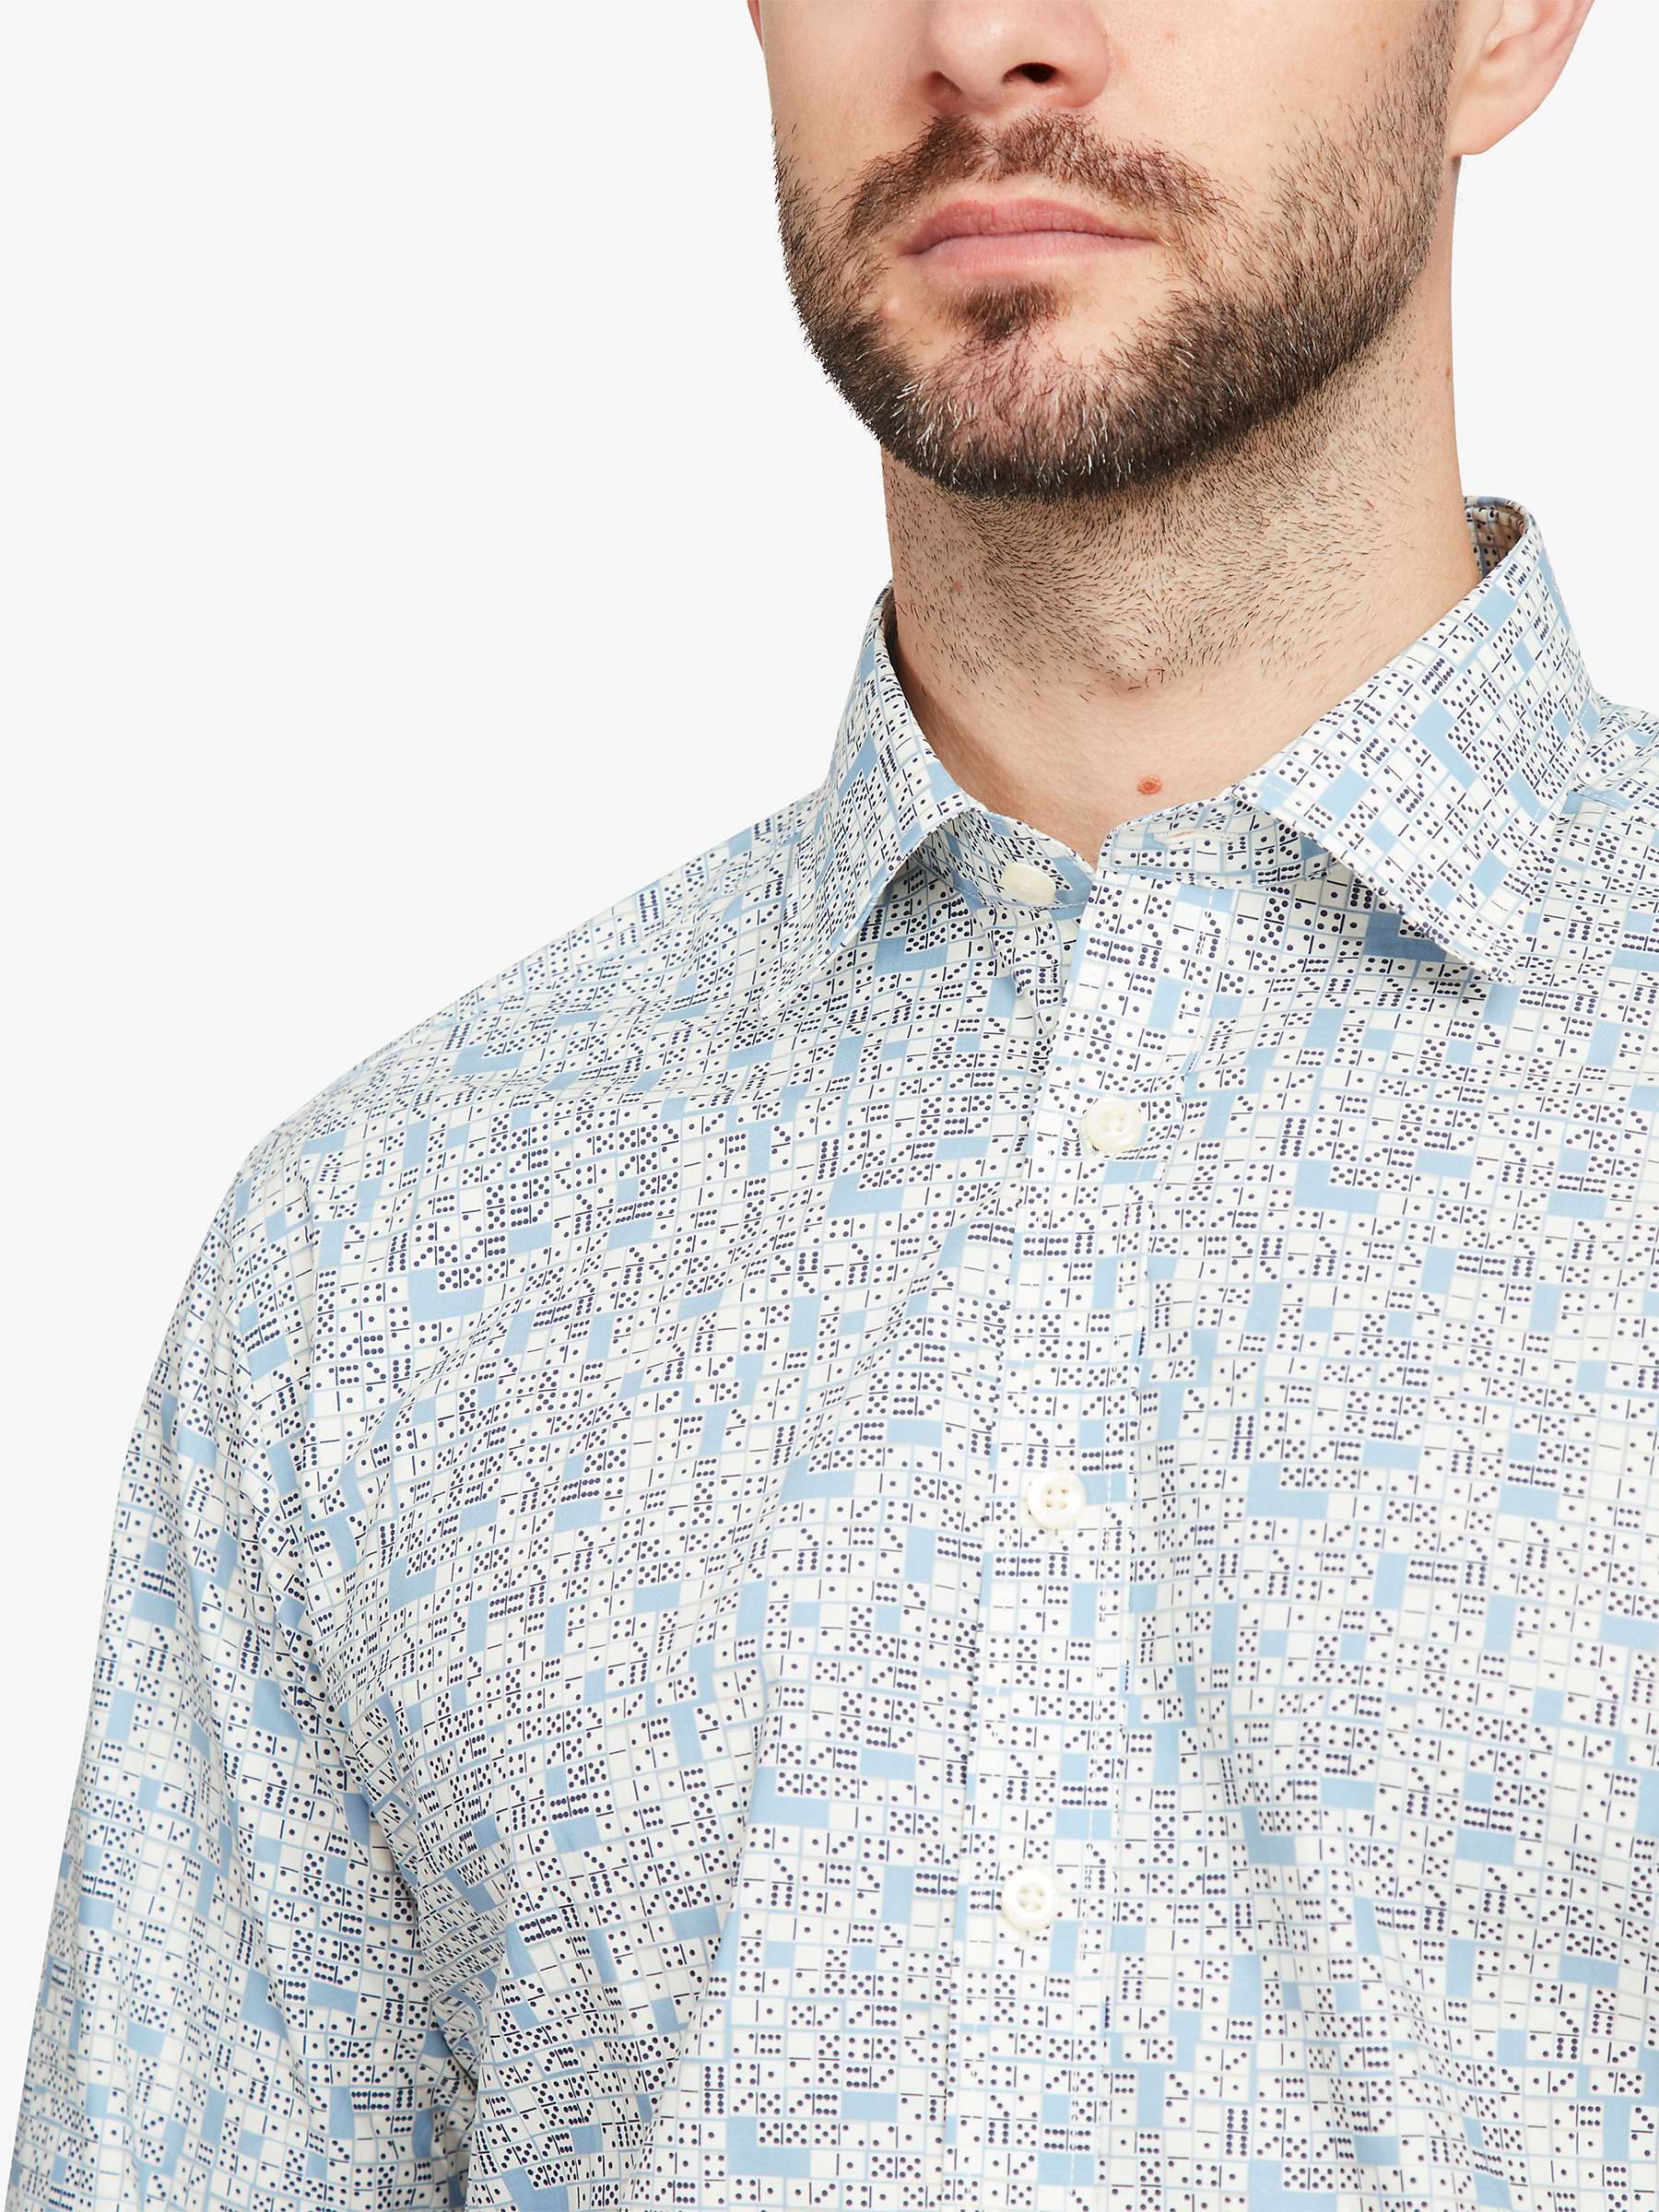 Buy Simon Carter Domino Long Sleeve Shirt, Blue/White Online at johnlewis.com